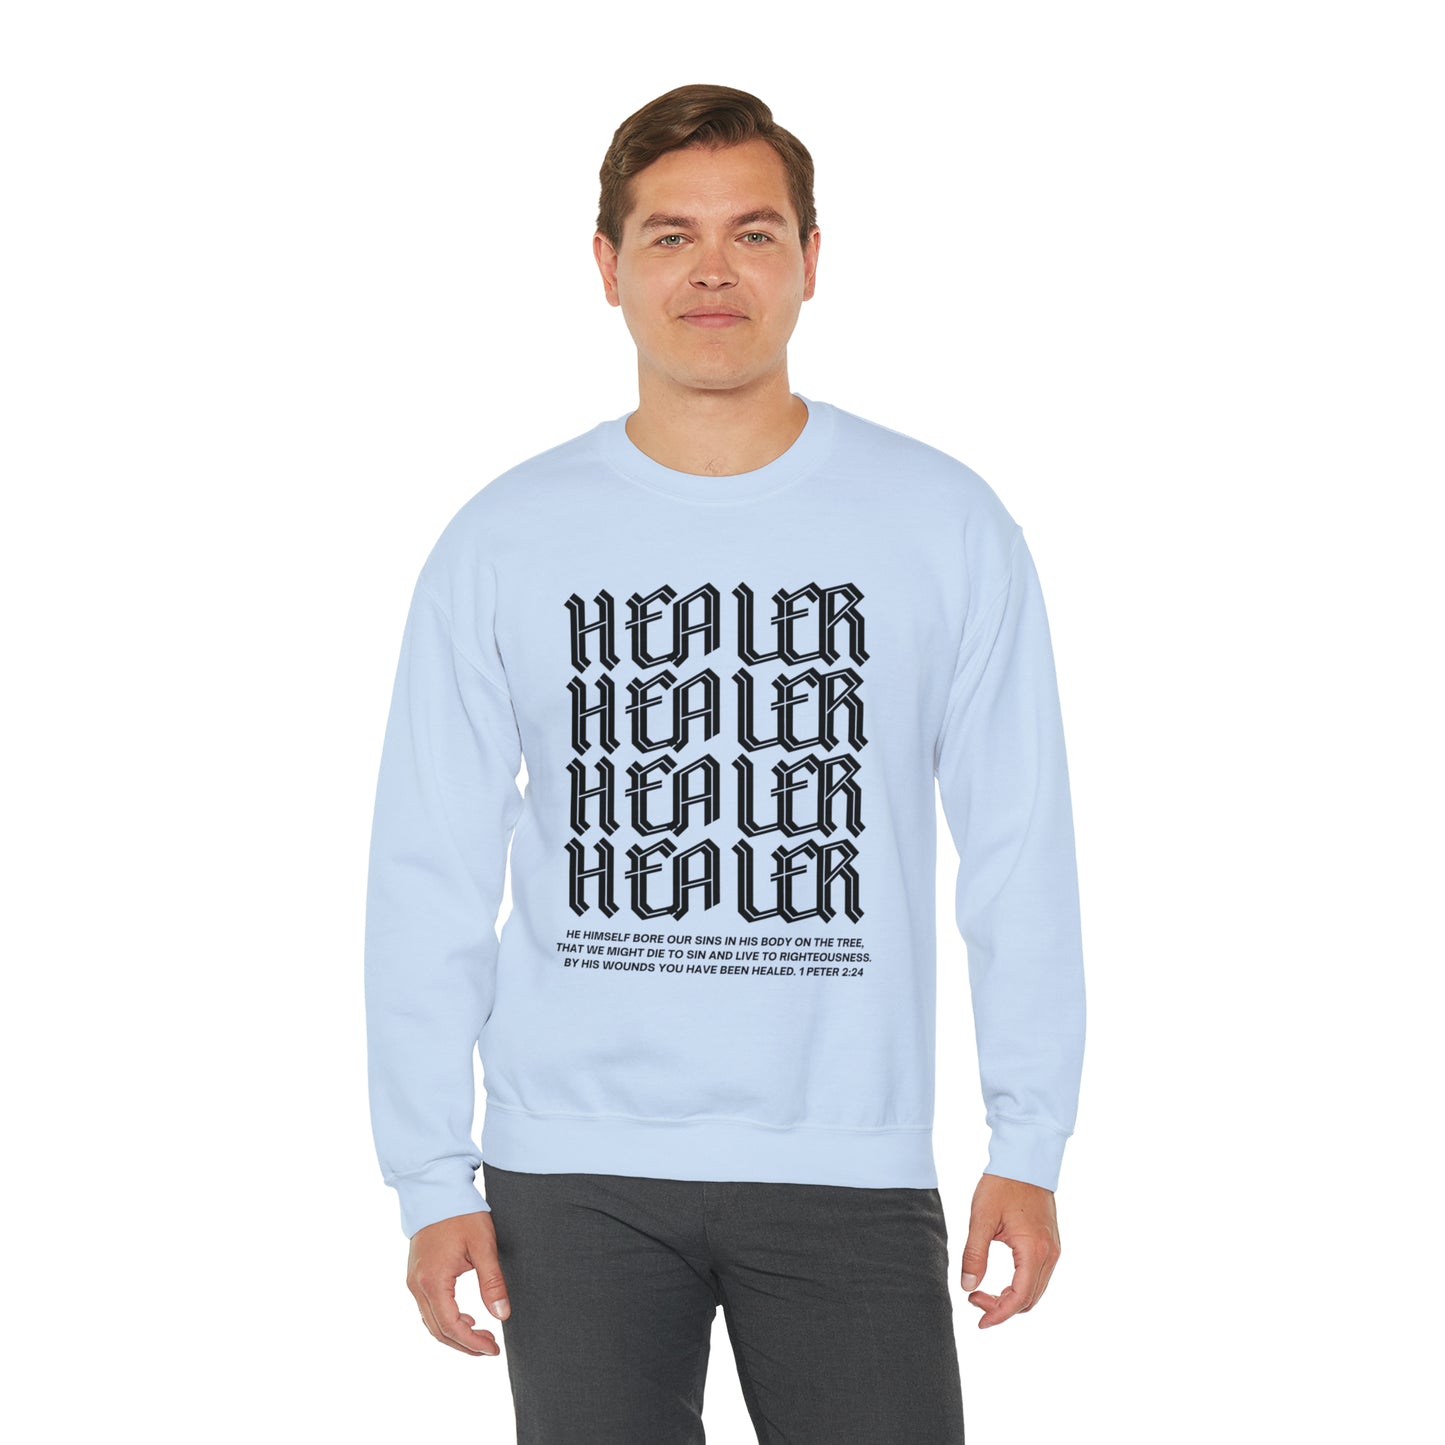 "Healer" Crewneck Sweatshirt